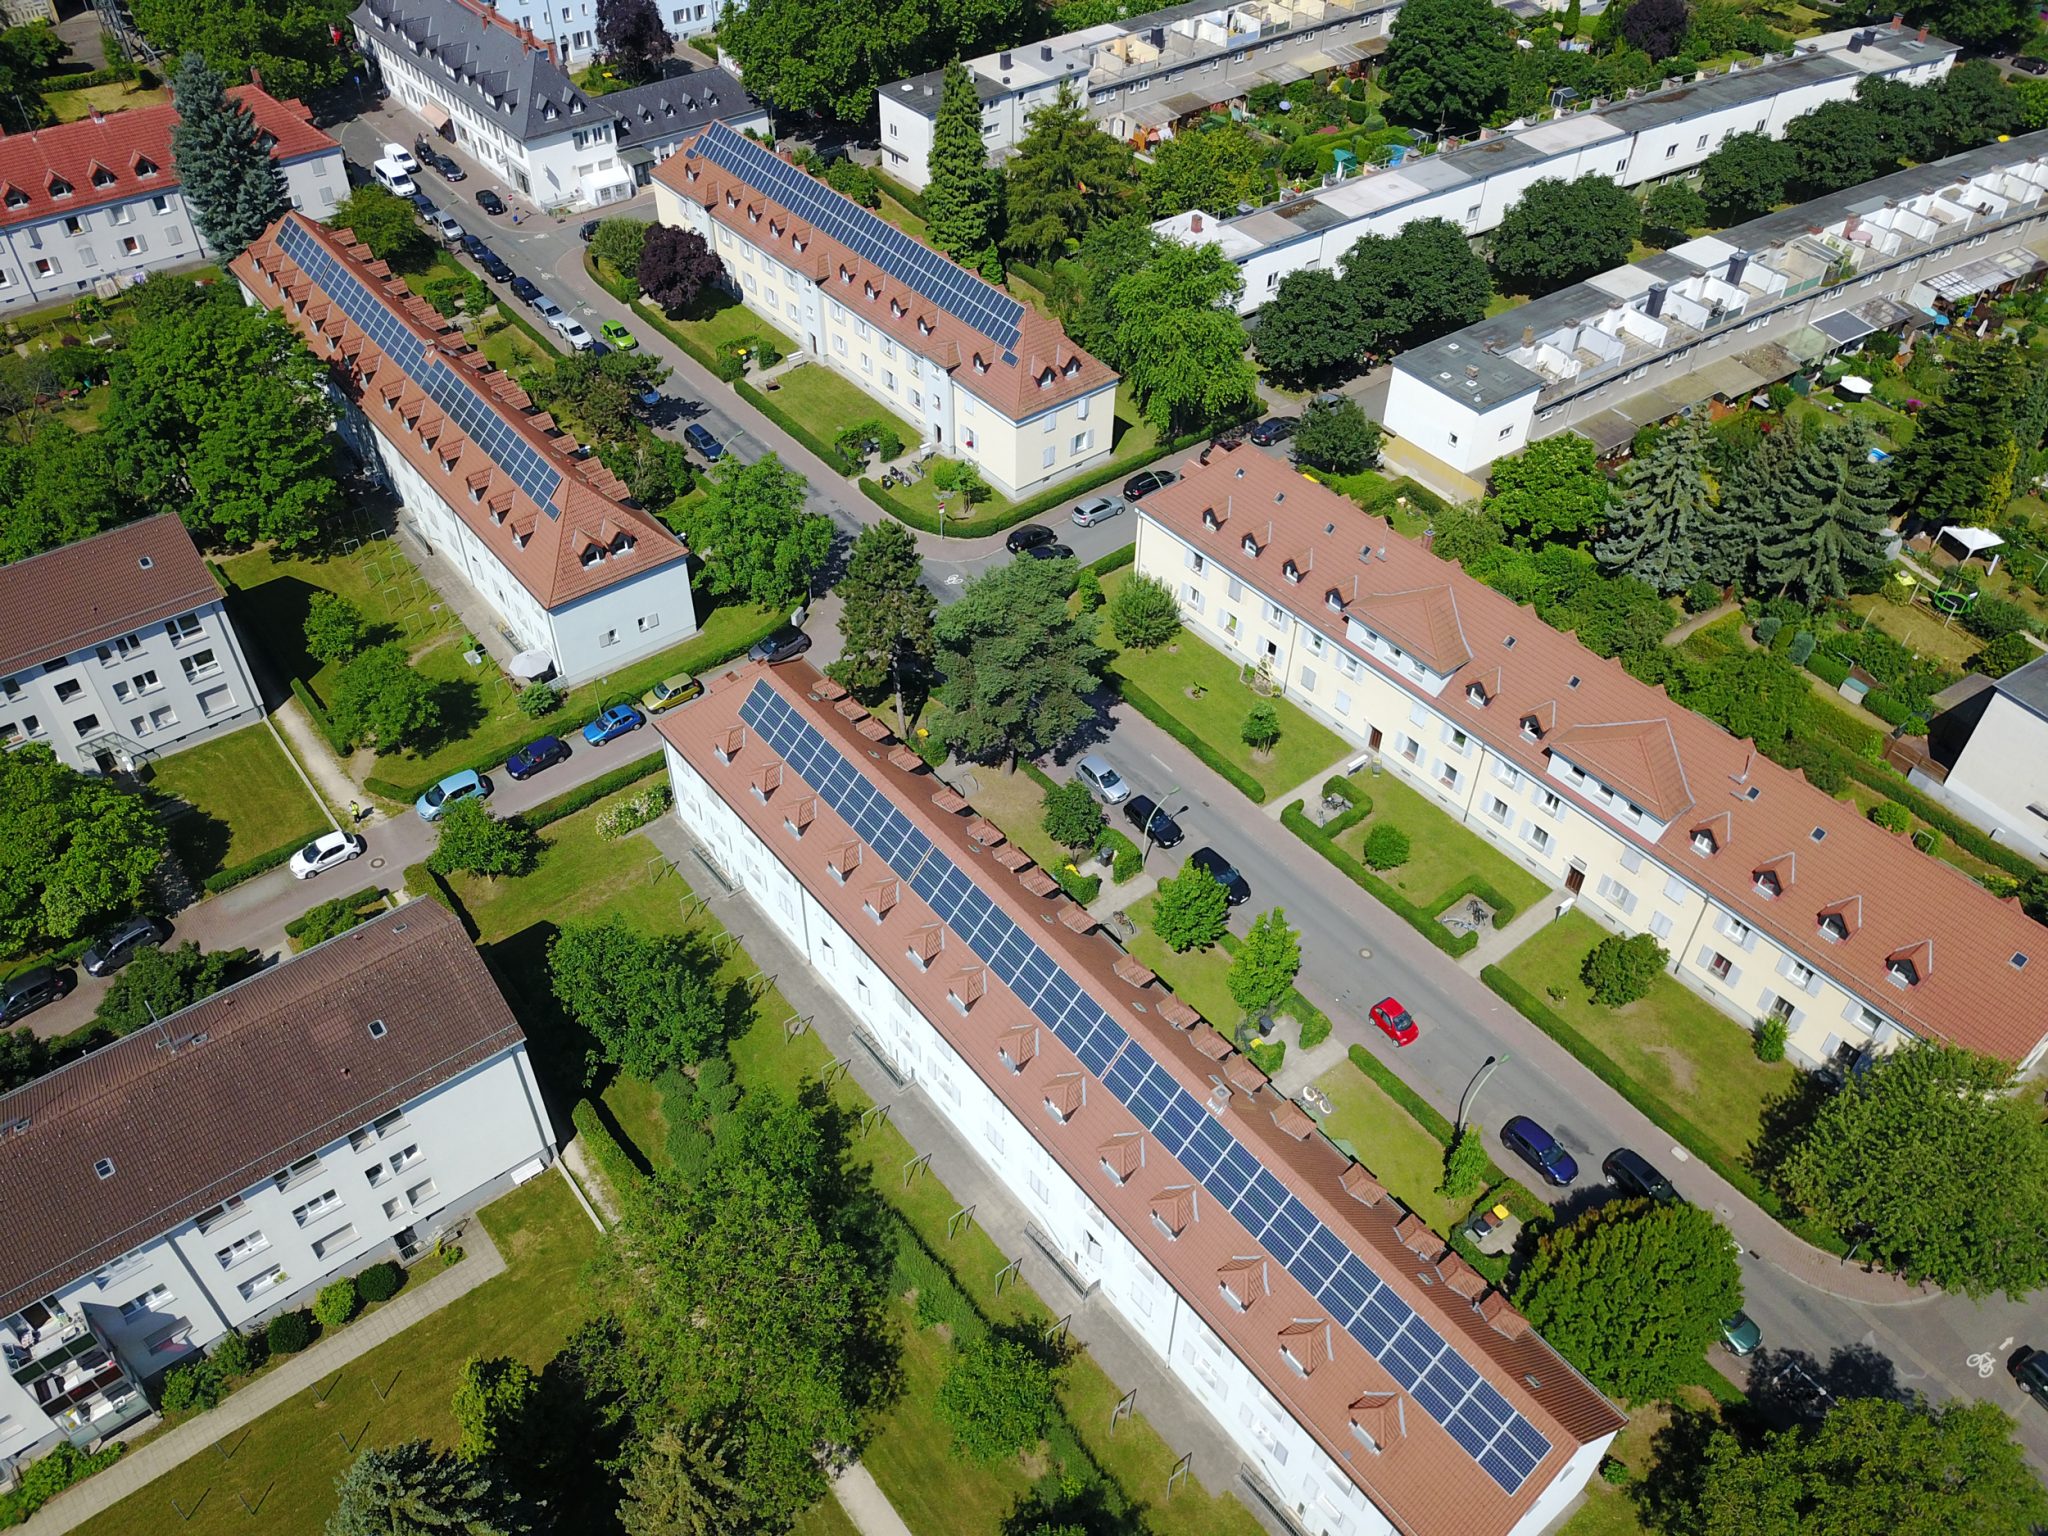 Luftbild von einer grünen Wohnsiedlung mit Solar